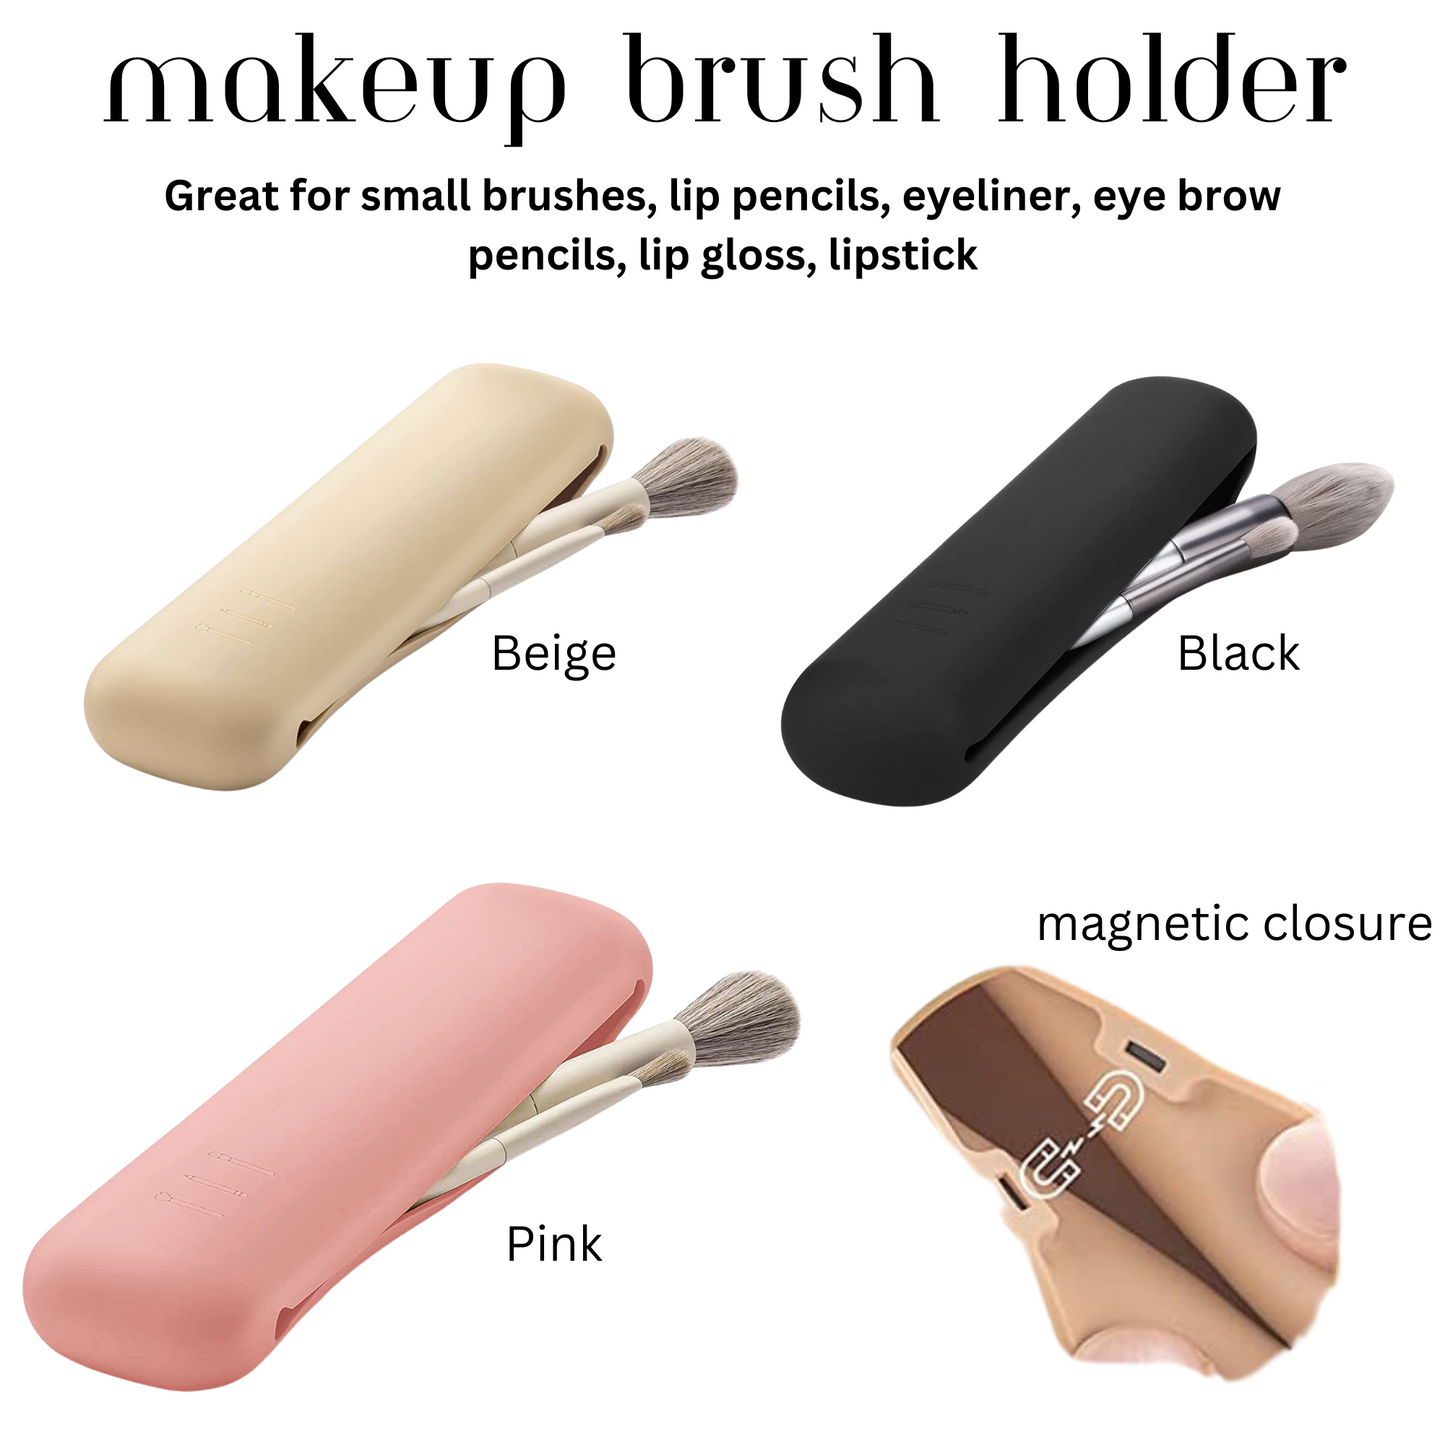 Makeup Sponge and Makeup Brush Bundle